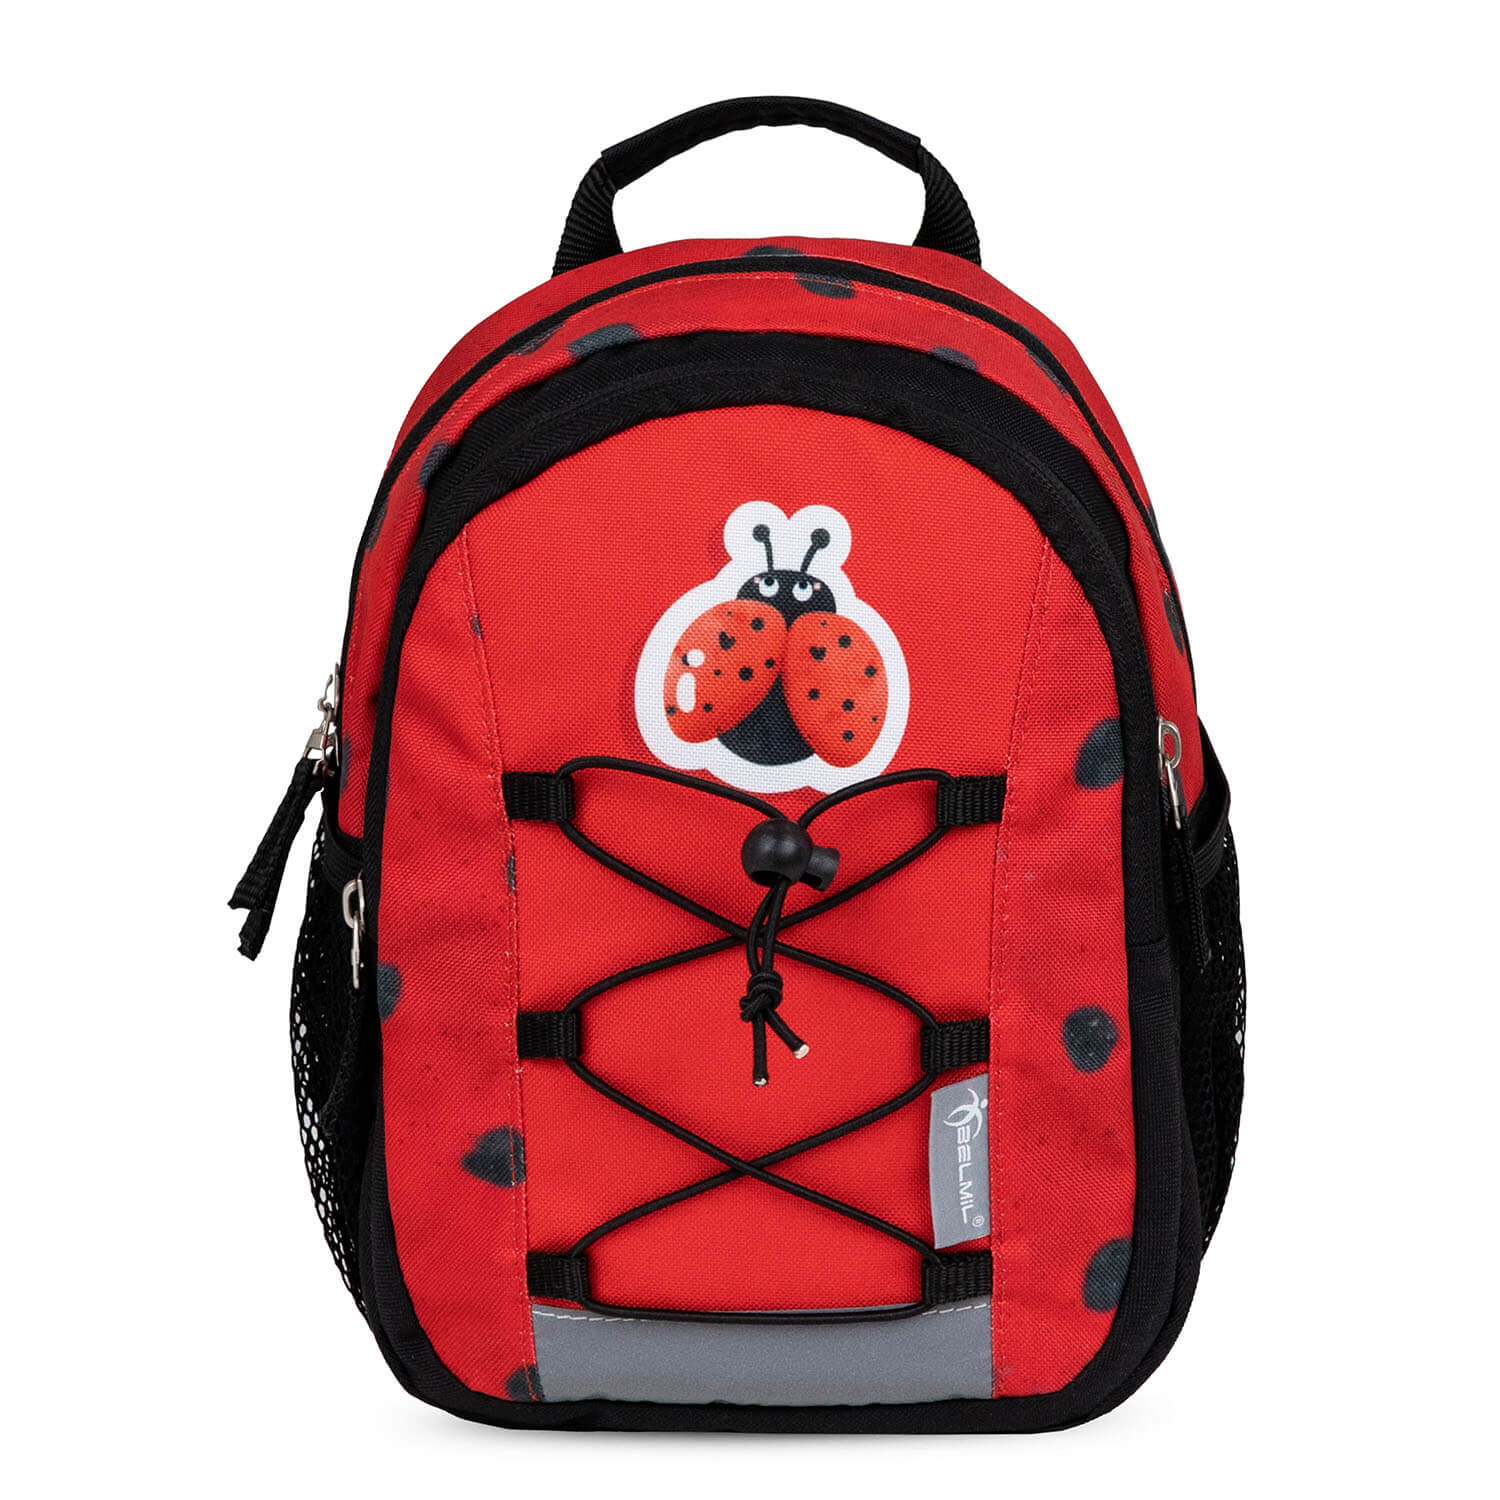 Kindergartenrucksack "Ladybug" für 1-3 Jährige Kinder Rucksack